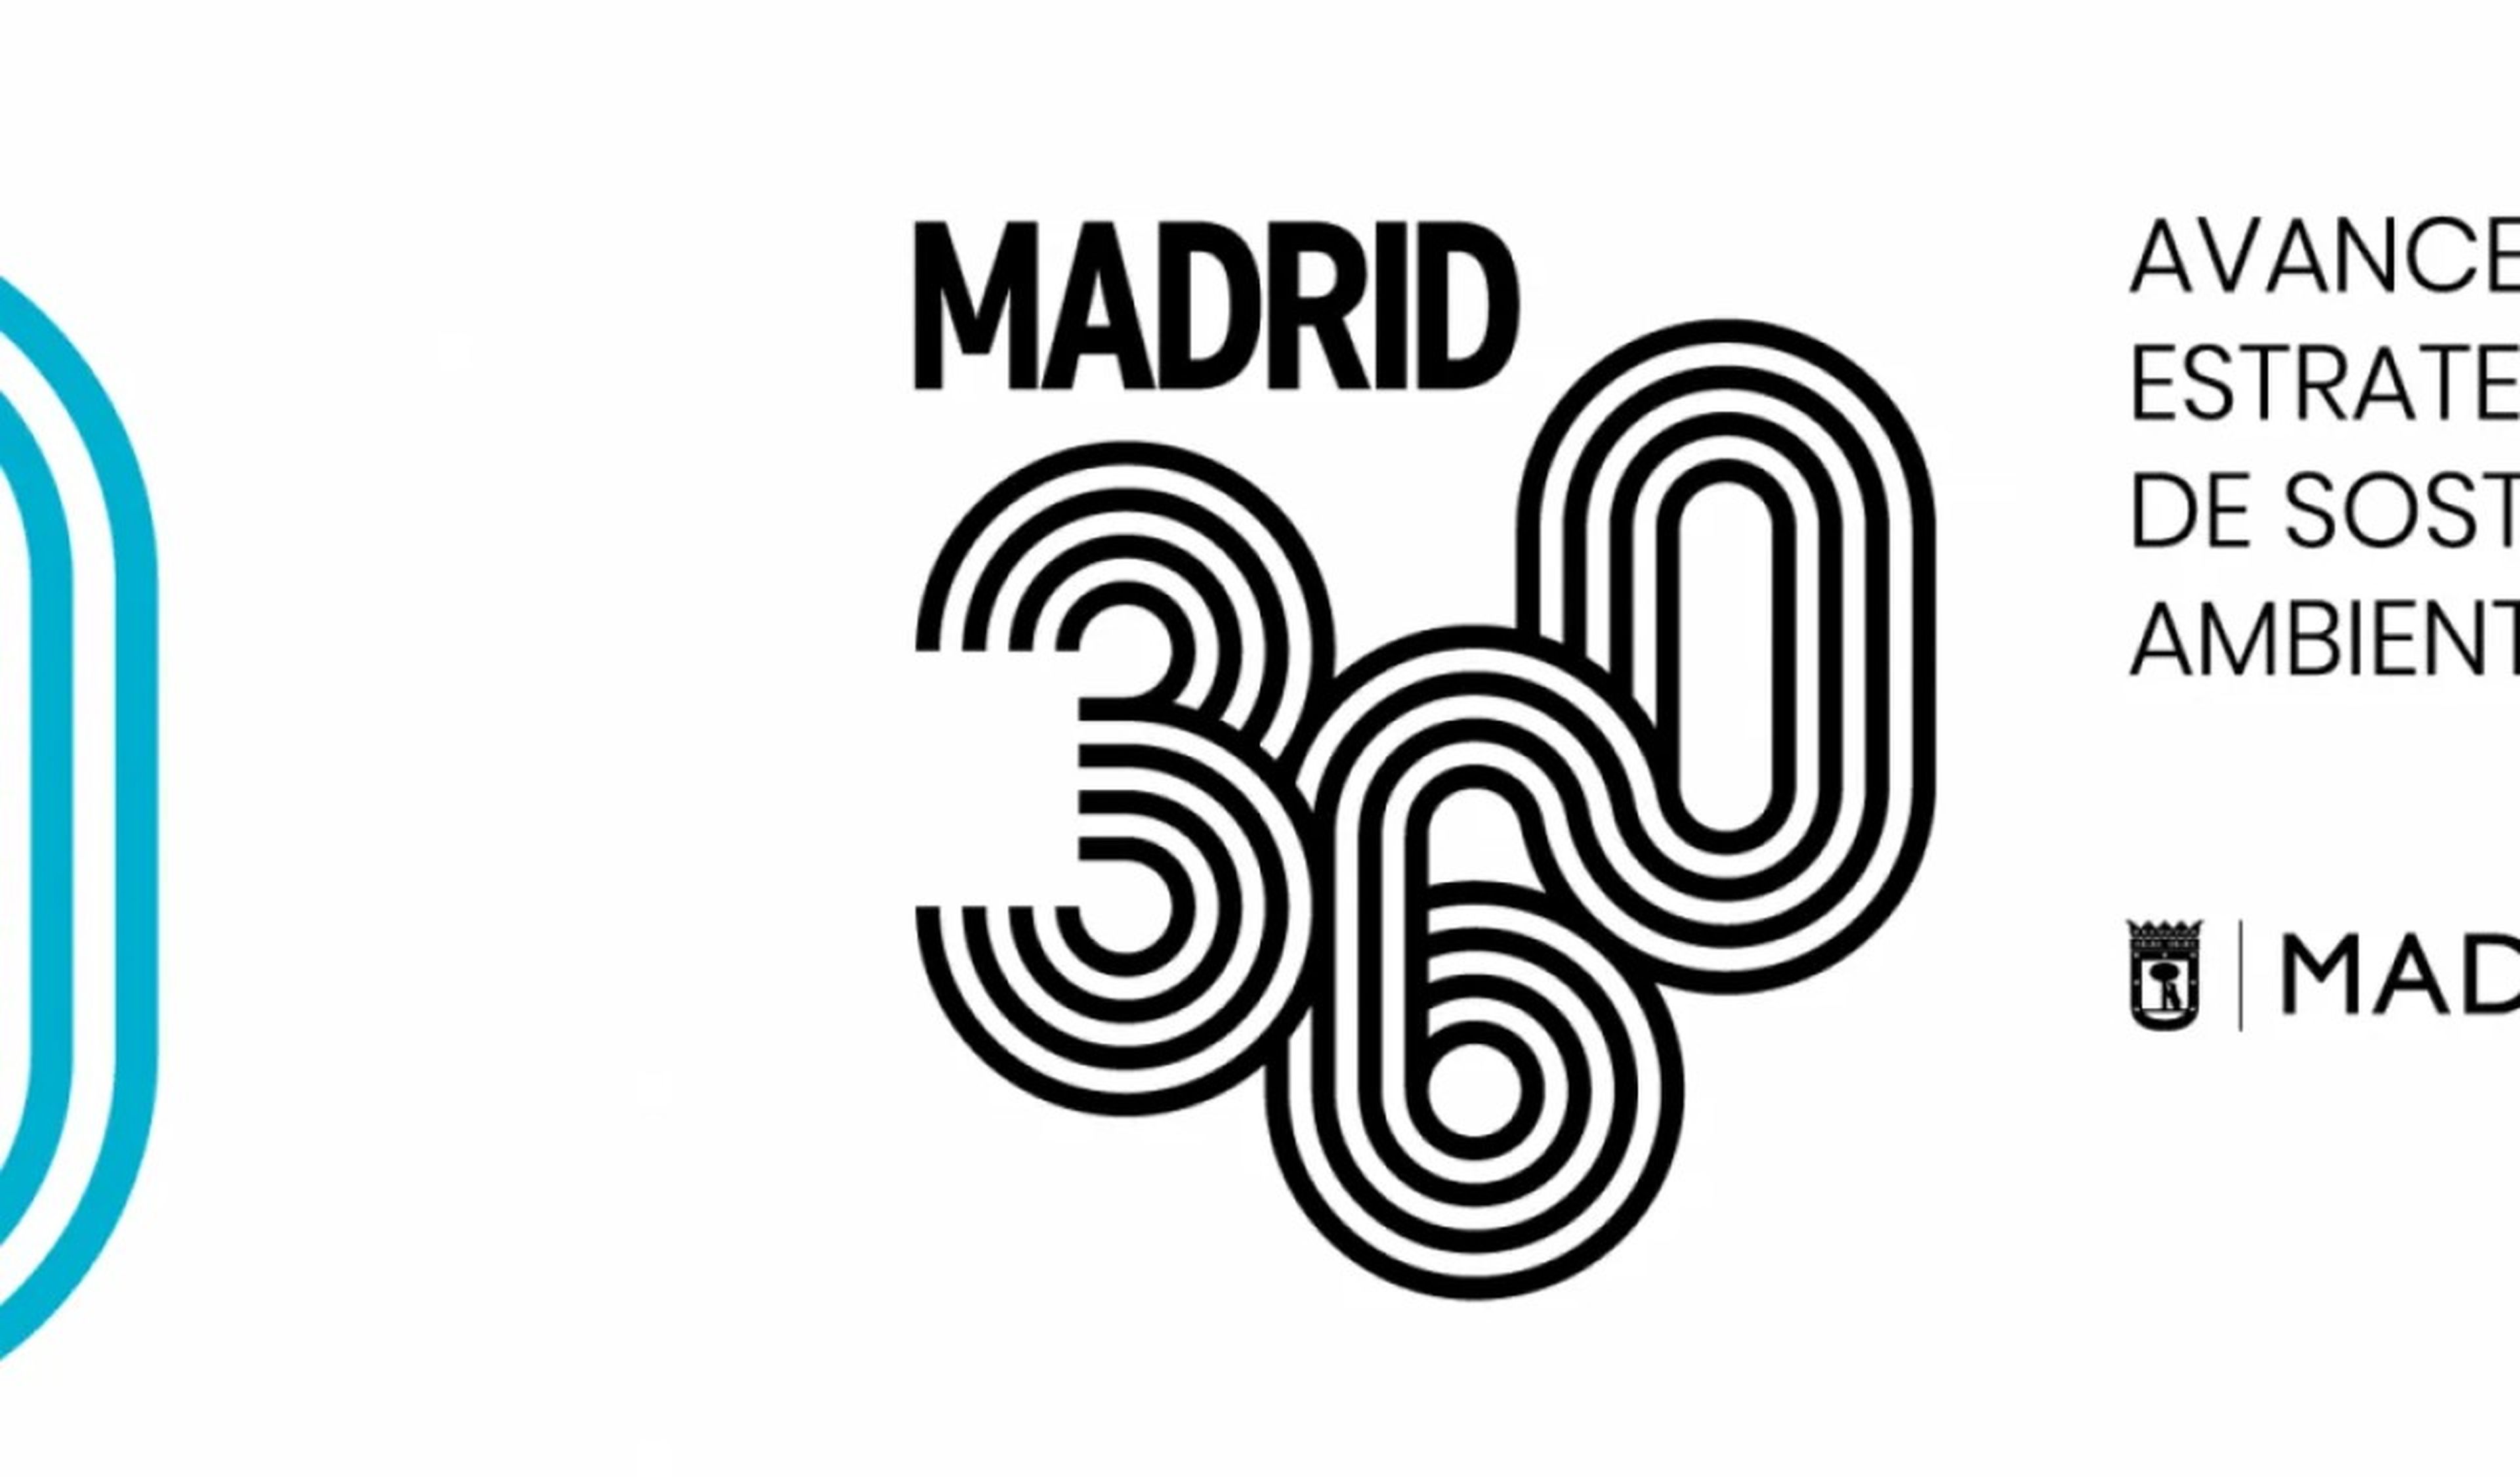 VTC sufren problemas para la renovación de las autorizaciones de acceso a Madrid 360